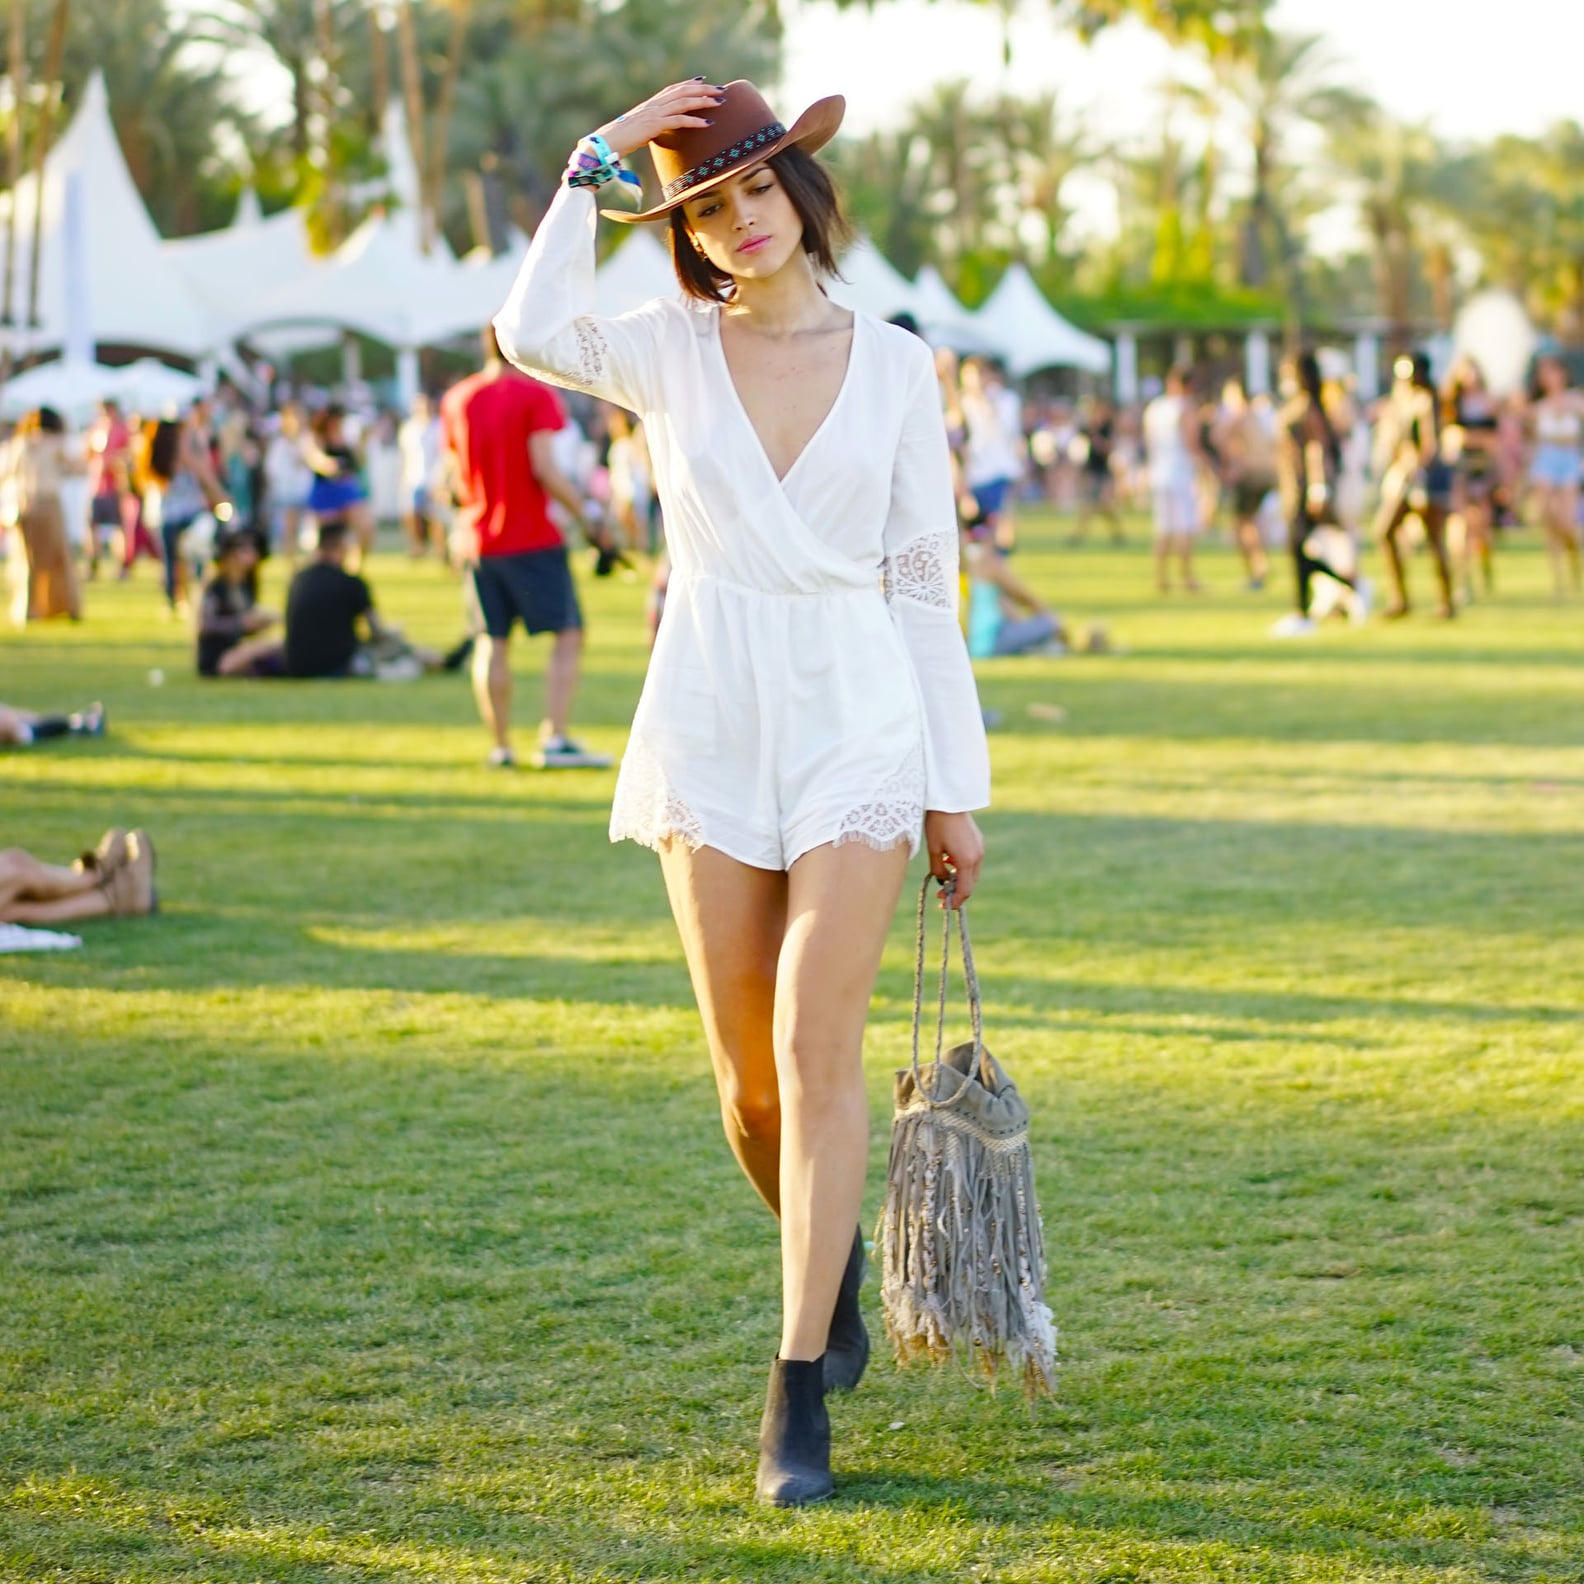 Coachella Fashion 2015 Pictures | POPSUGAR Fashion